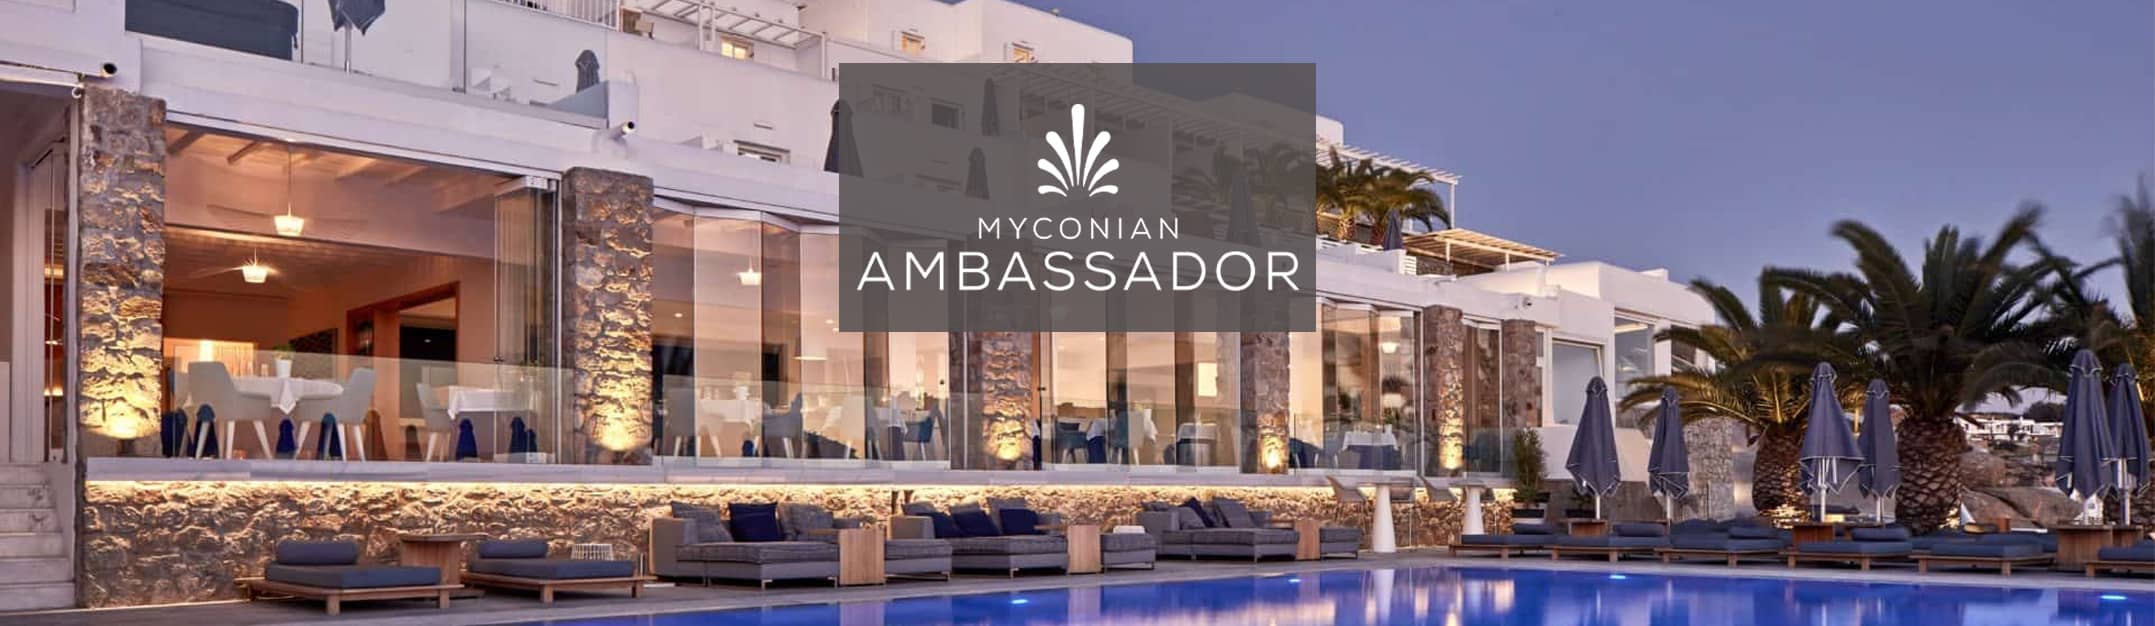 Myconian Ambassador